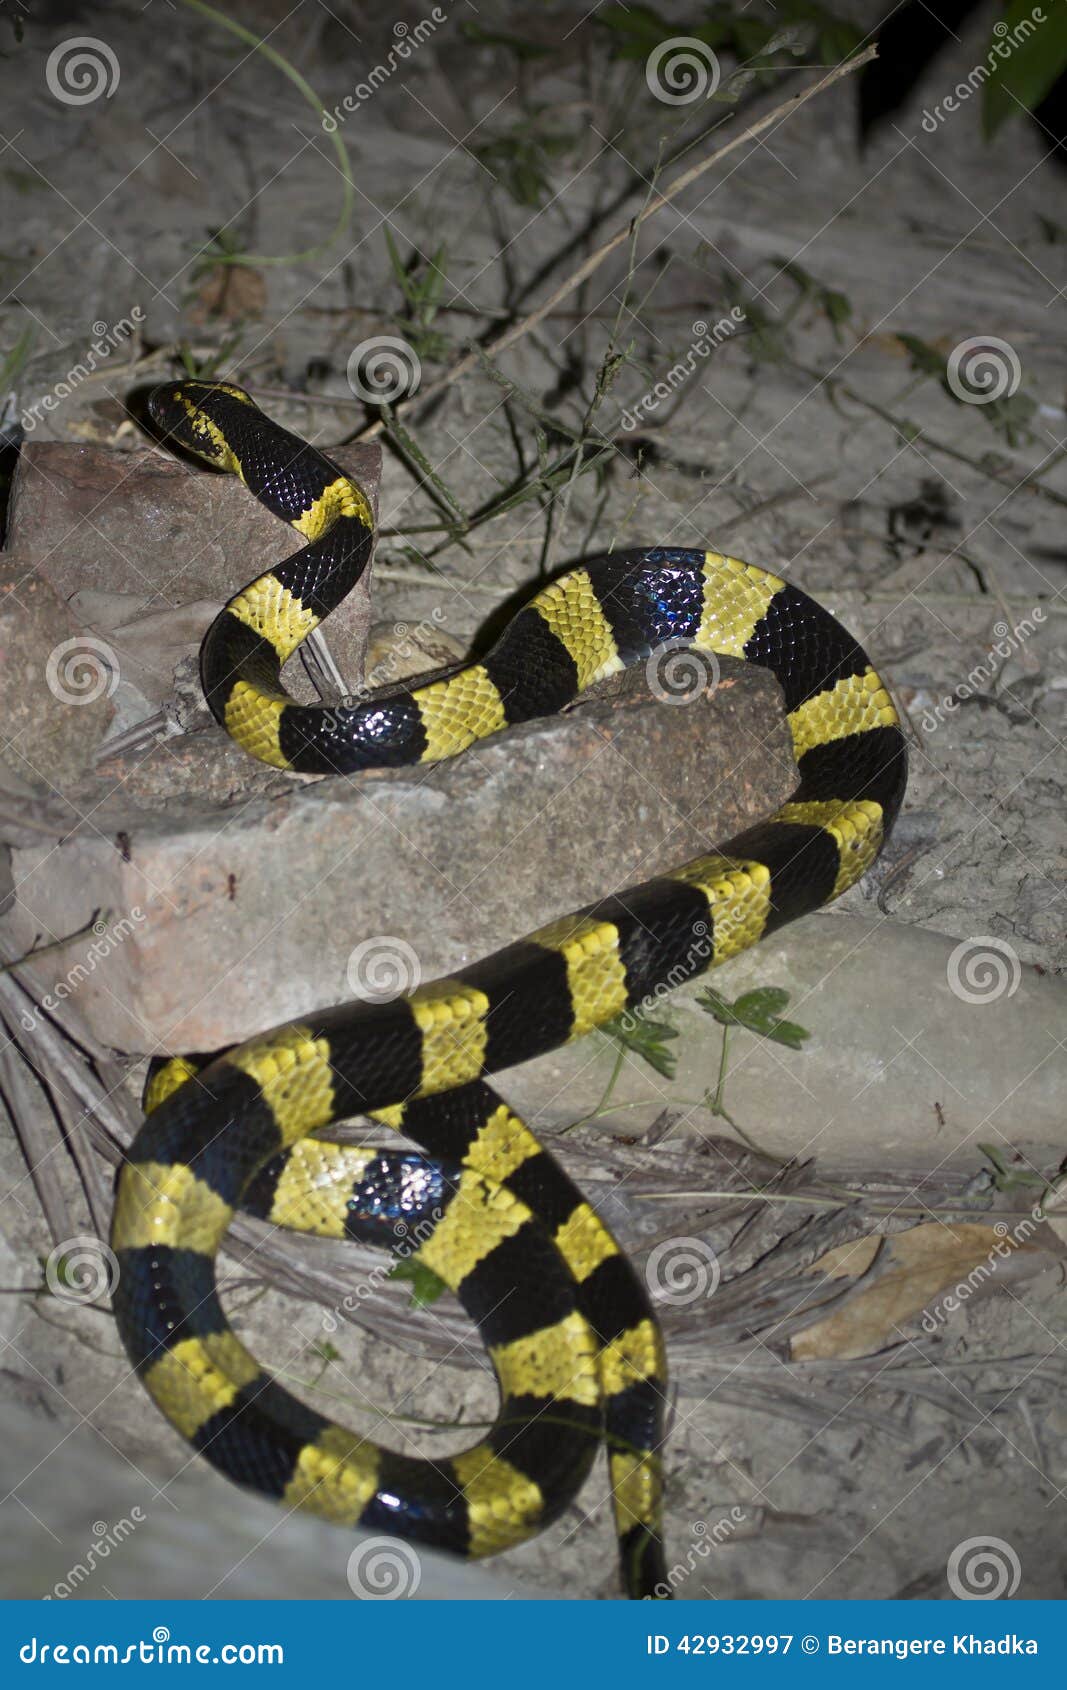 banded krait snake specie bungarus fasciatus in nepal